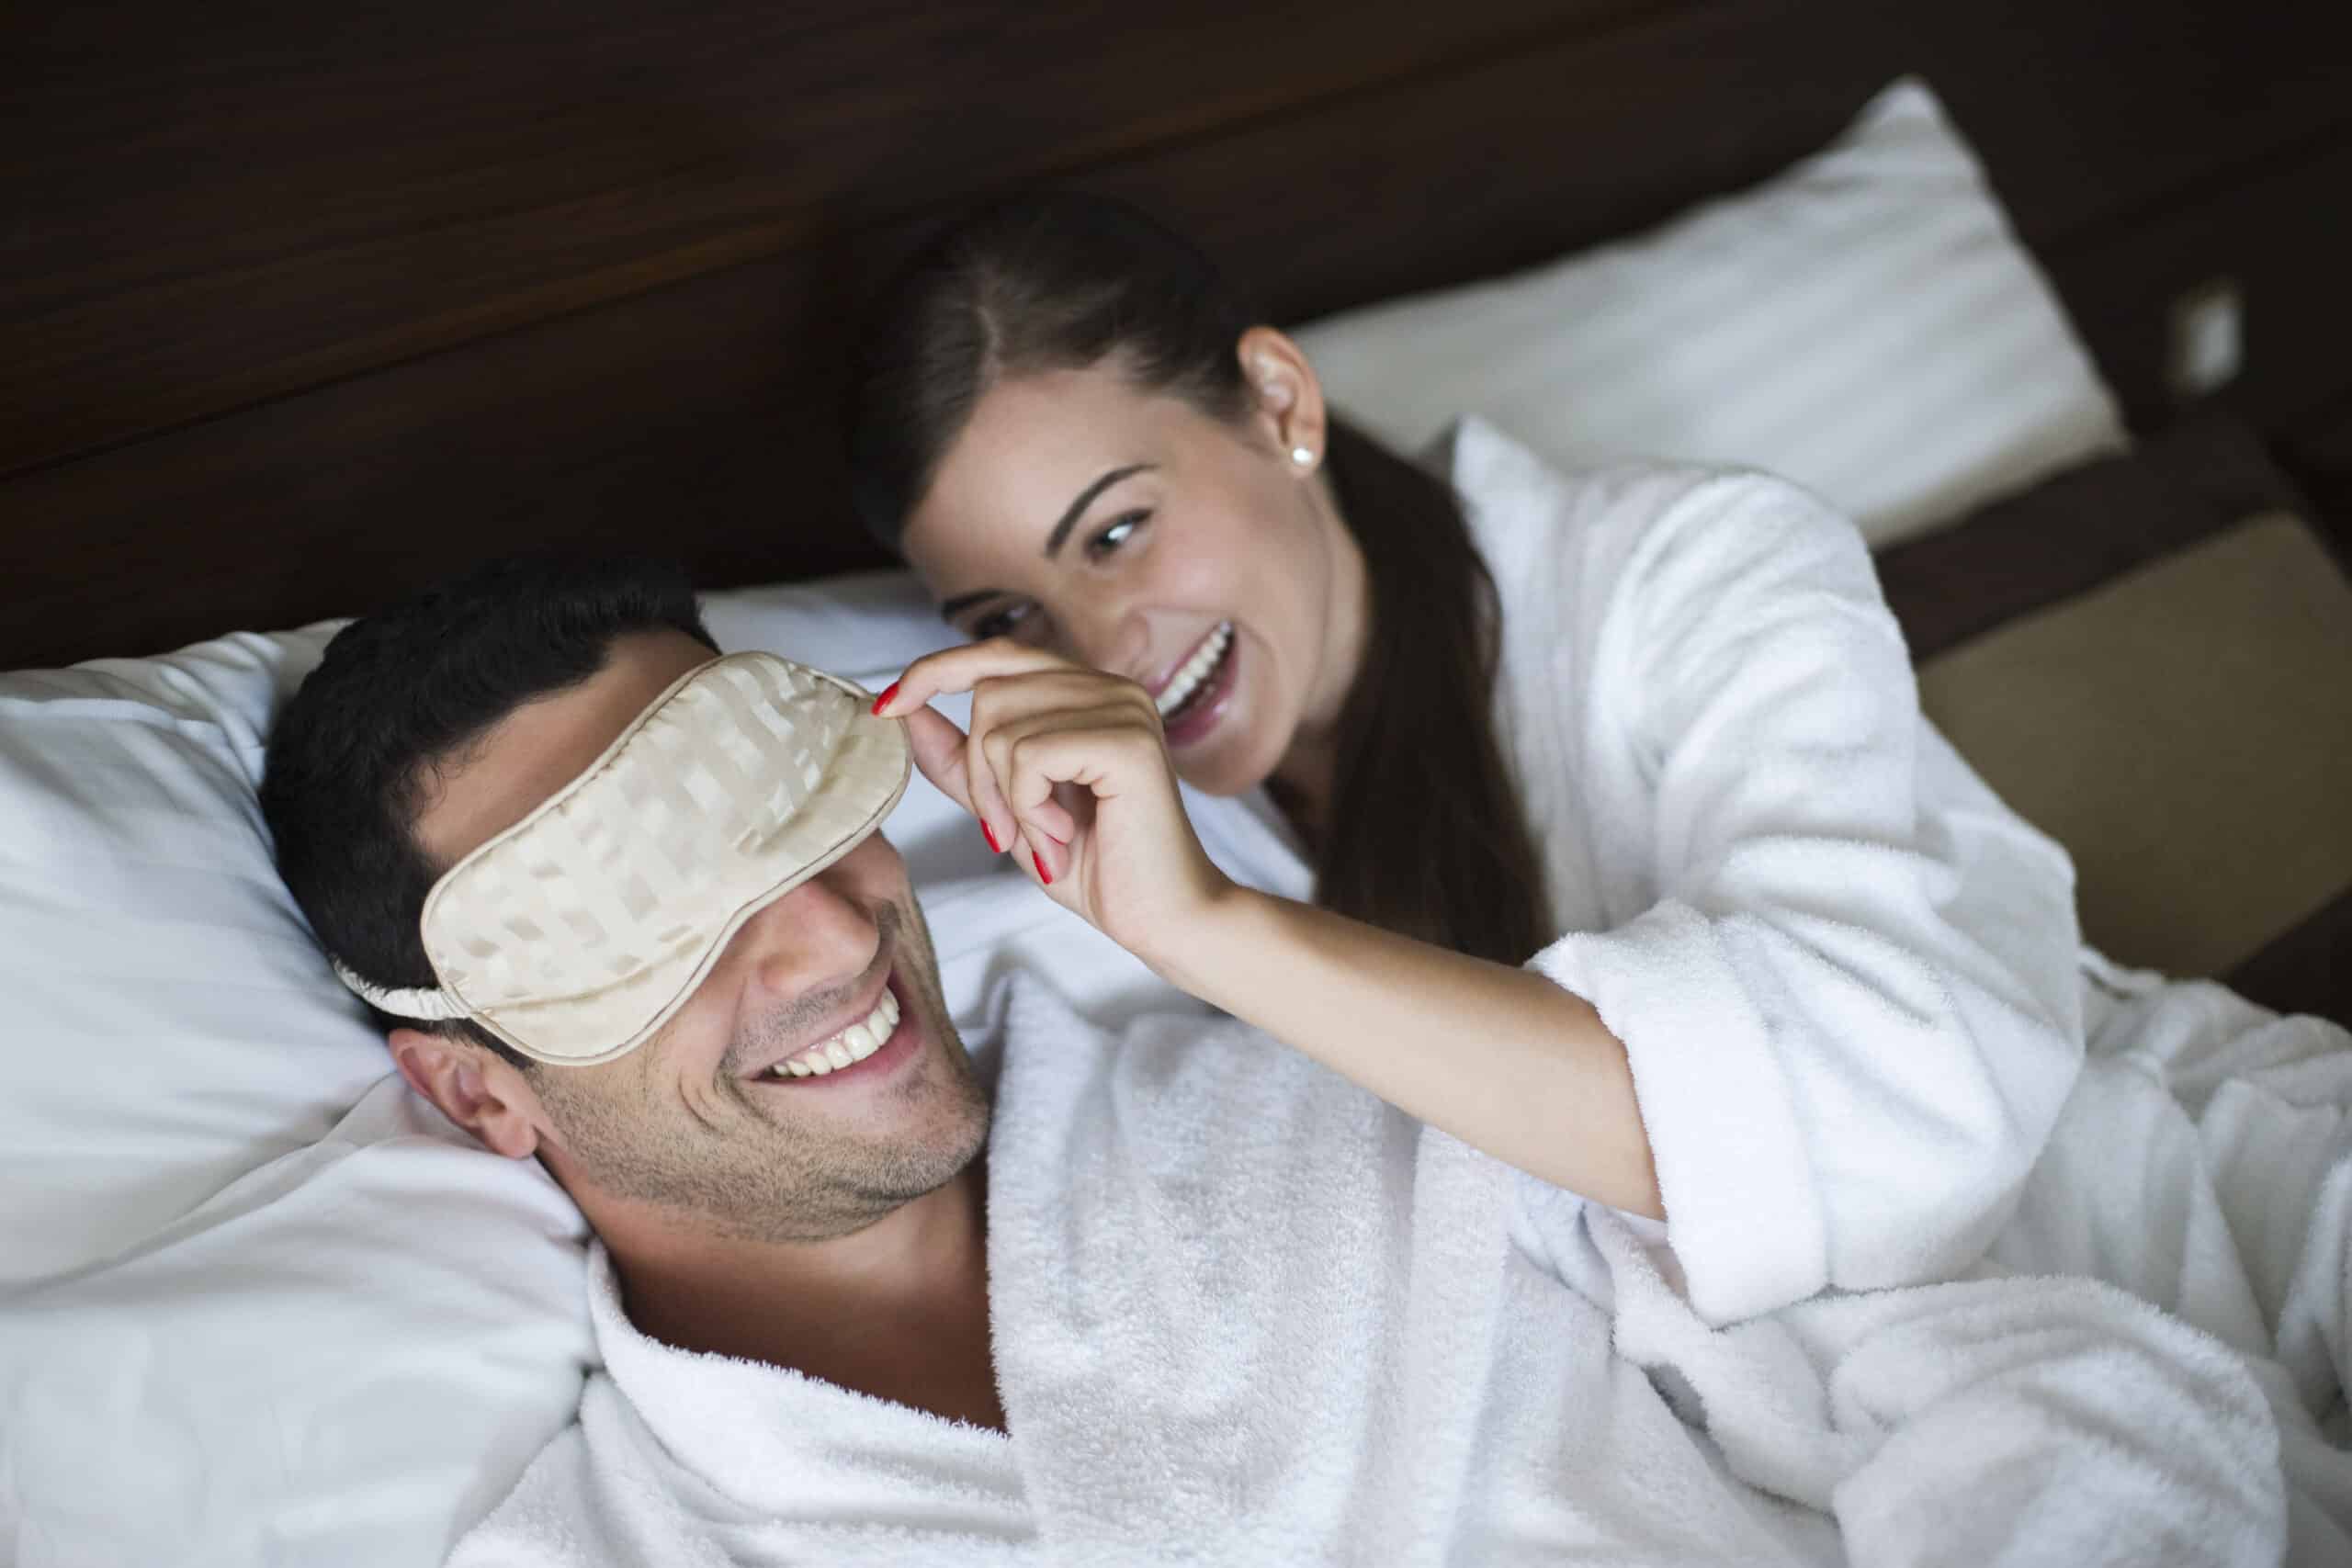 Ein Mann trägt eine Schlafmaske und eine Frau im weißen Bademantel hebt die Maske spielerisch an. Beide lächeln und liegen auf einem Bett. © Fotografie Tomas Rodriguez